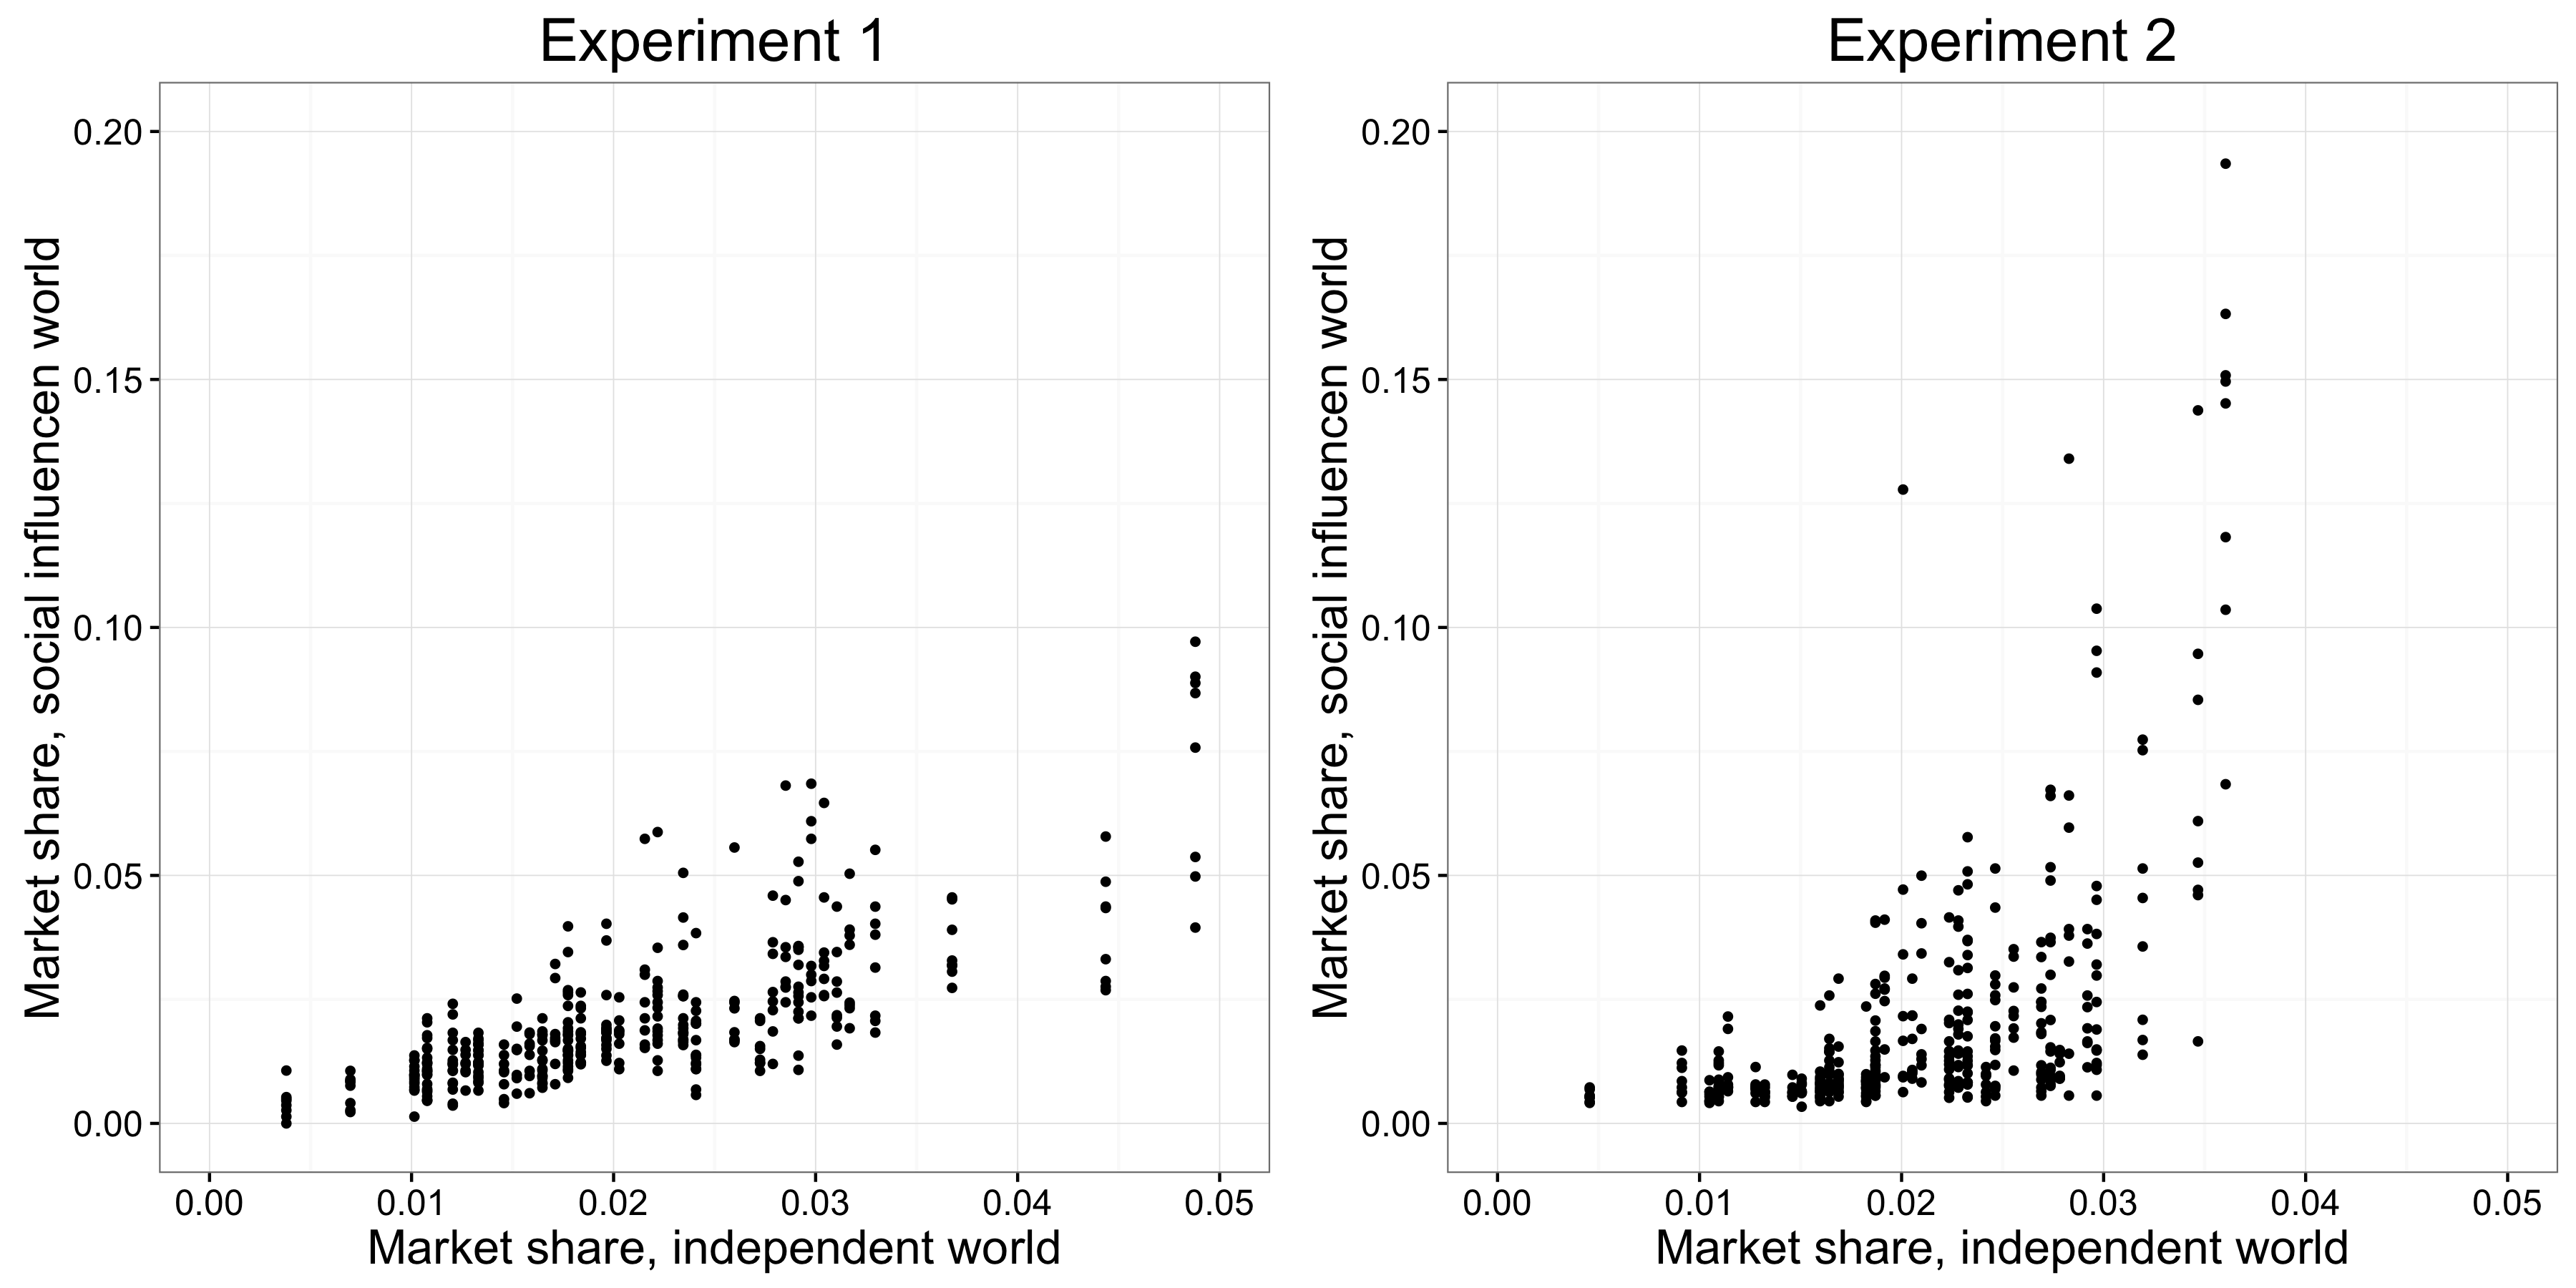 Figura 4.22: Els resultats dels experiments MusicLab que mostren la relació entre el recurs i l'èxit (Salganik, Dodds, i Watts 2006). L'eix x és la quota de mercat de la cançó en el món independent, que serveix com una mesura de l'apel·lació de la cançó, i l'eix i és la quota de mercat de la mateixa cançó en els 8 mons d'influència social, que serveix com una mesura de l'èxit de les cançons. Es va trobar que l'augment de la influència social que els participants van experimentar-específicament, el canvi en el disseny de l'experiment 1 per a l'experiment 2 (Figura 4.21): provocada èxit per ser més impredictible, sobretot per les cançons més alts de recurs.